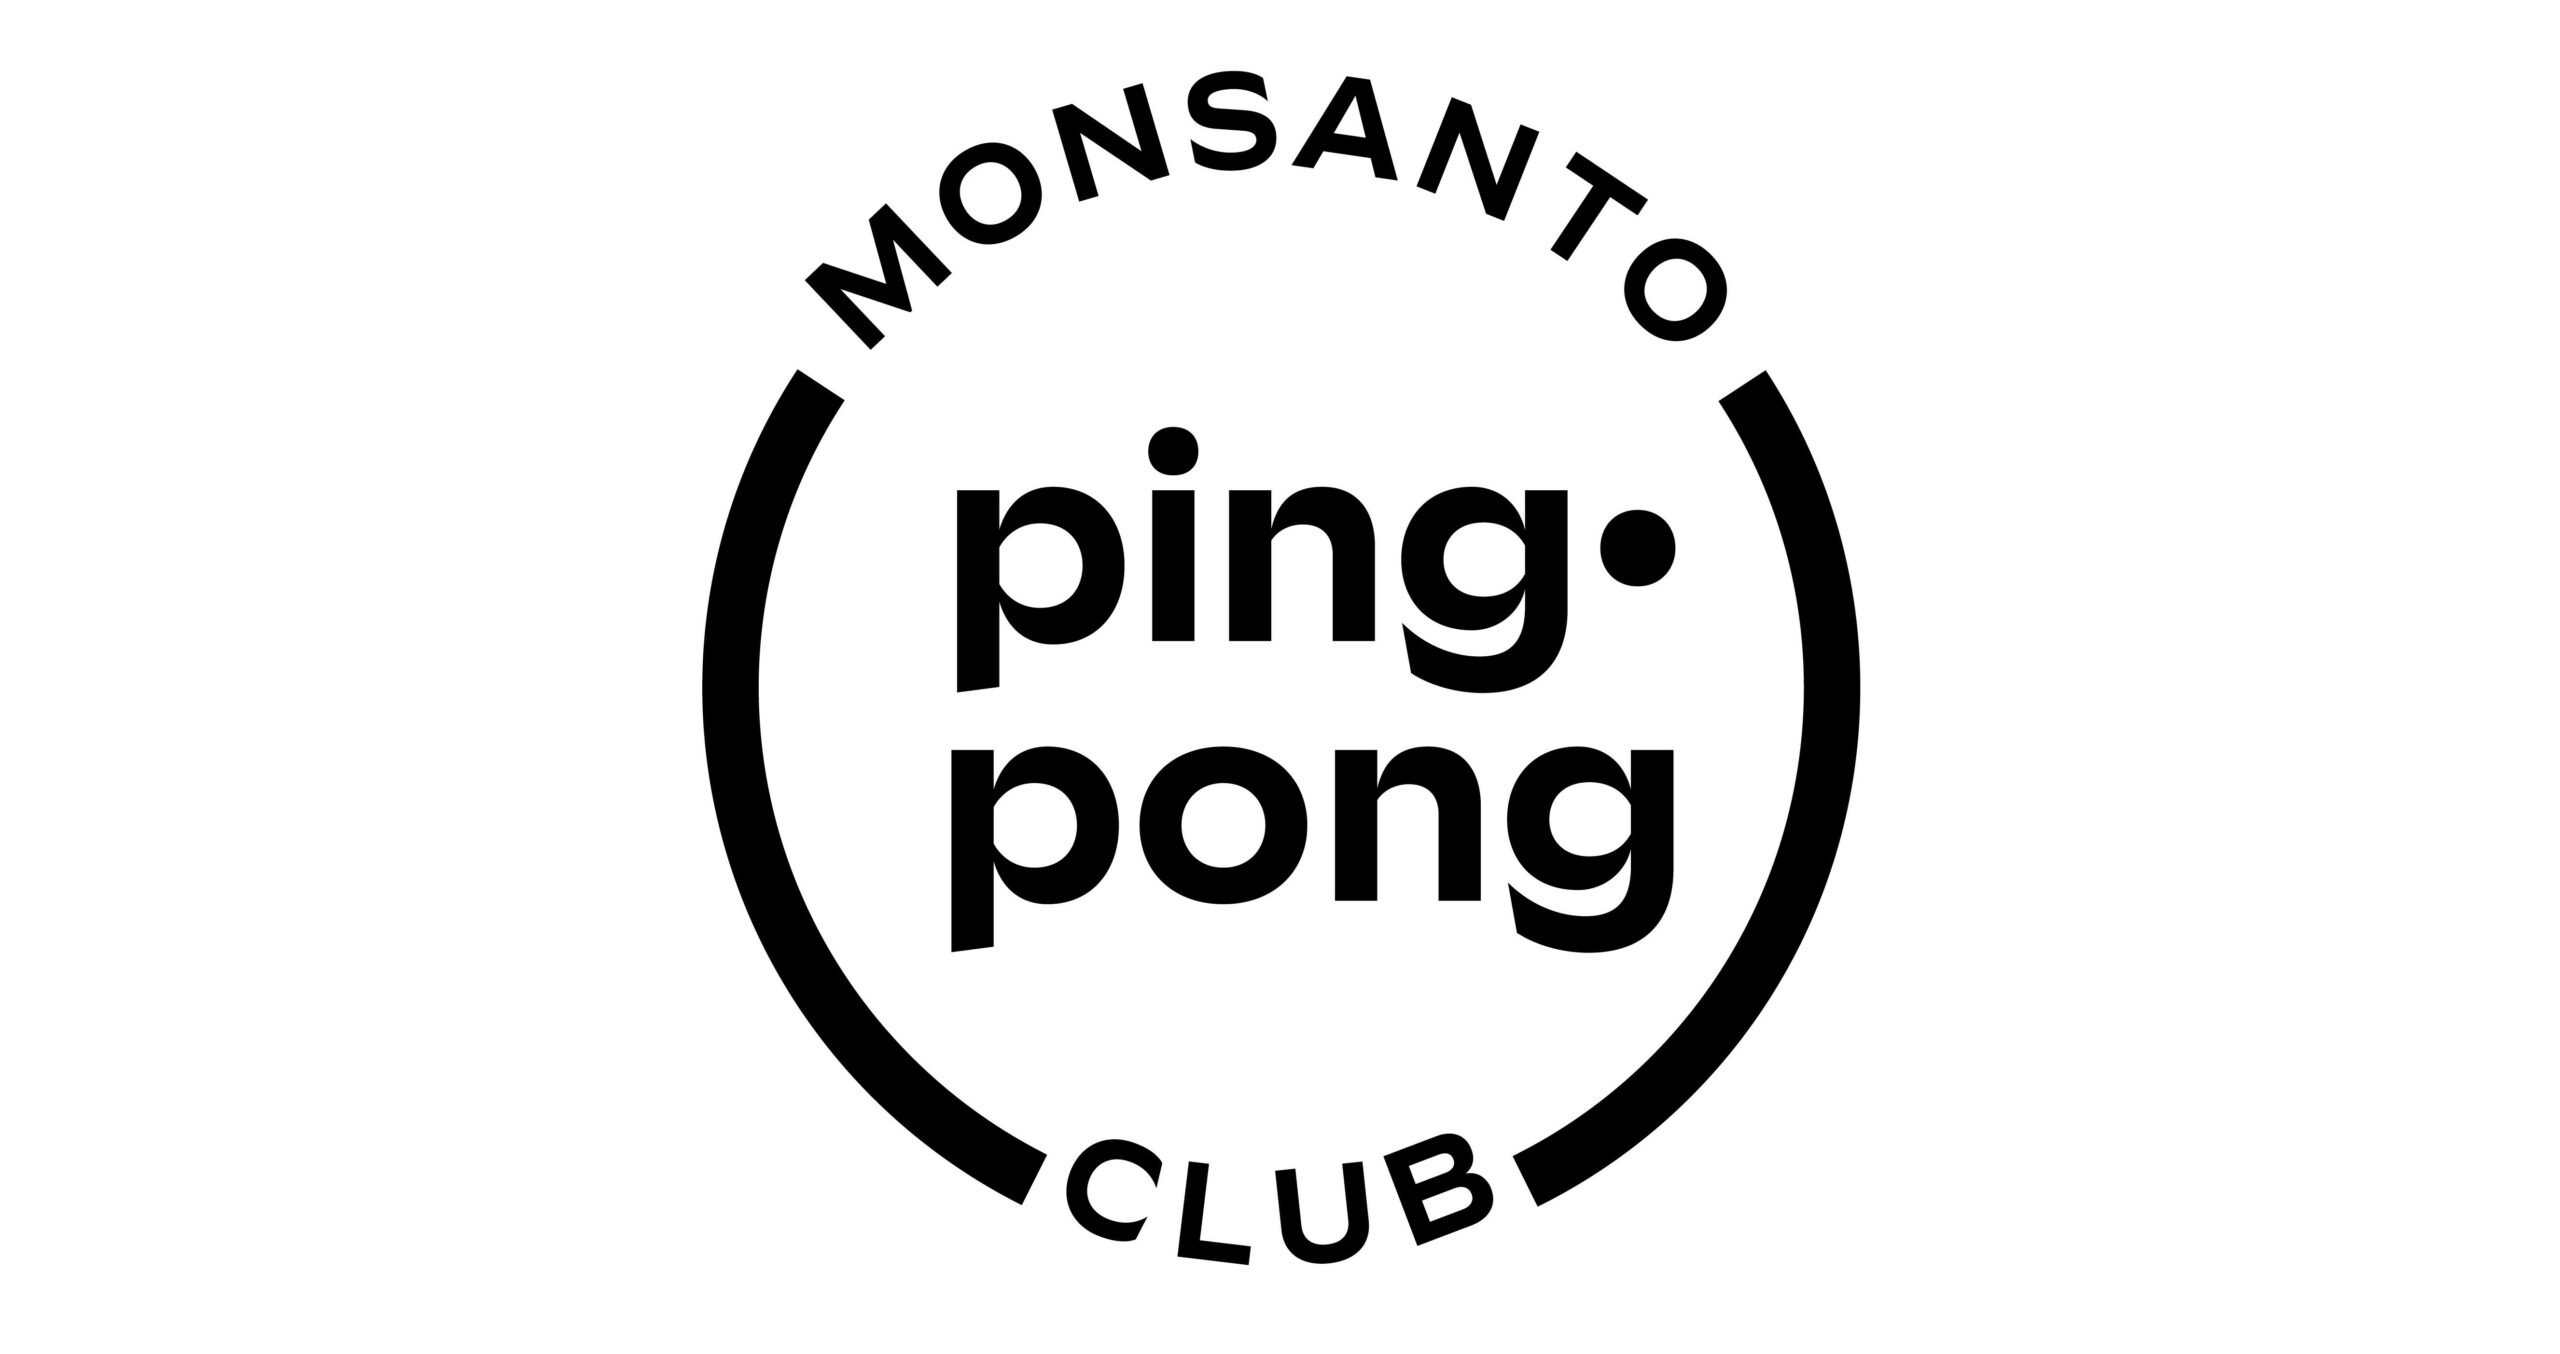 Monsanto Ping Pong Club